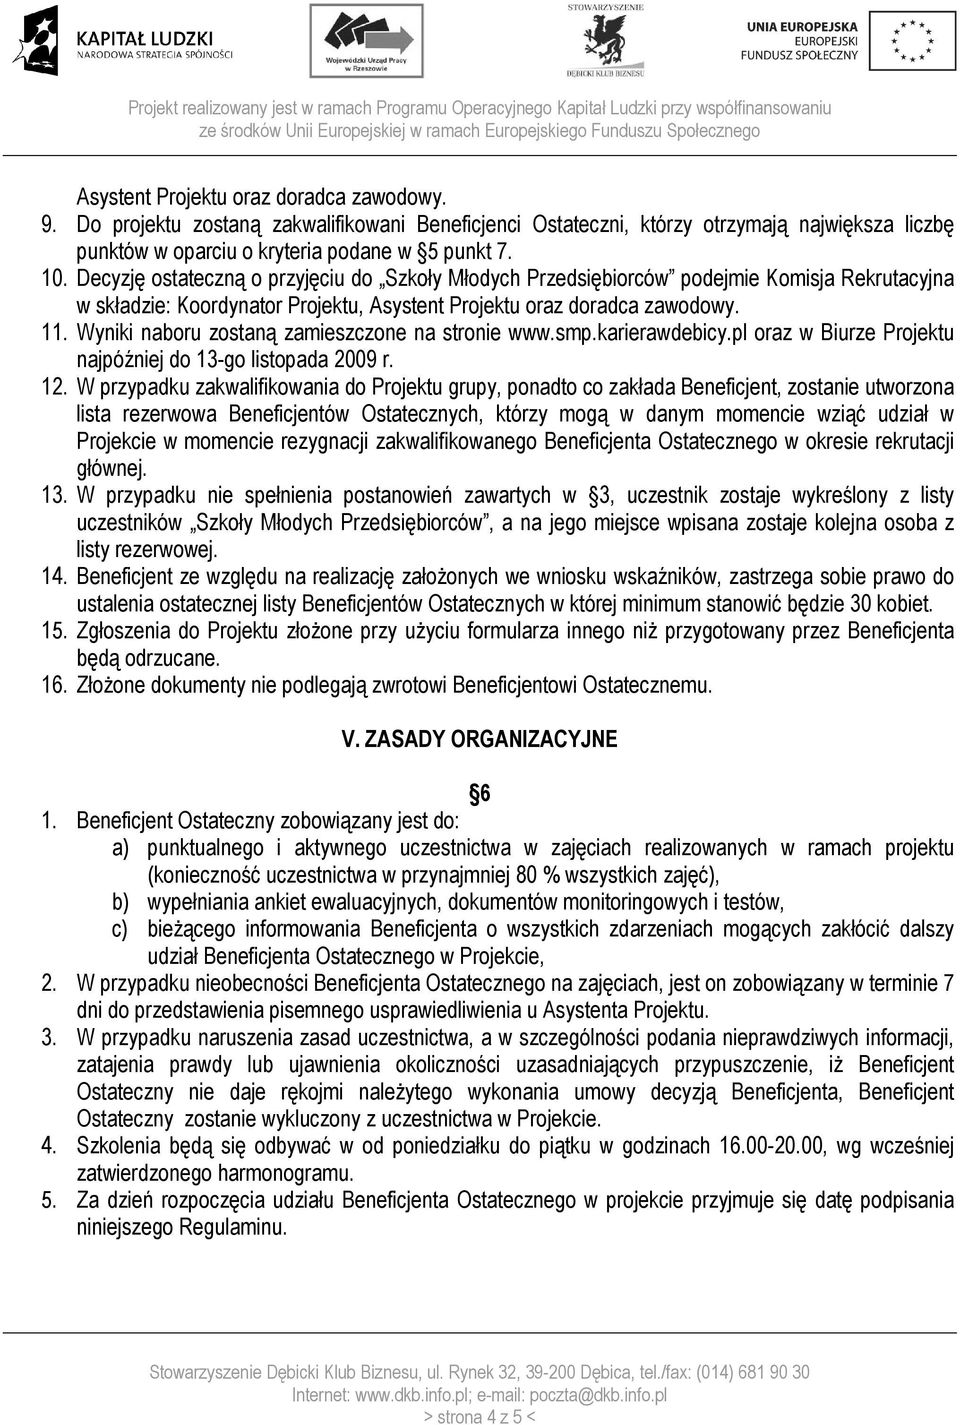 Wyniki naboru zostaną zamieszczone na stronie www.smp.karierawdebicy.pl oraz w Biurze Projektu najpóźniej do 13-go listopada 2009 r. 12.